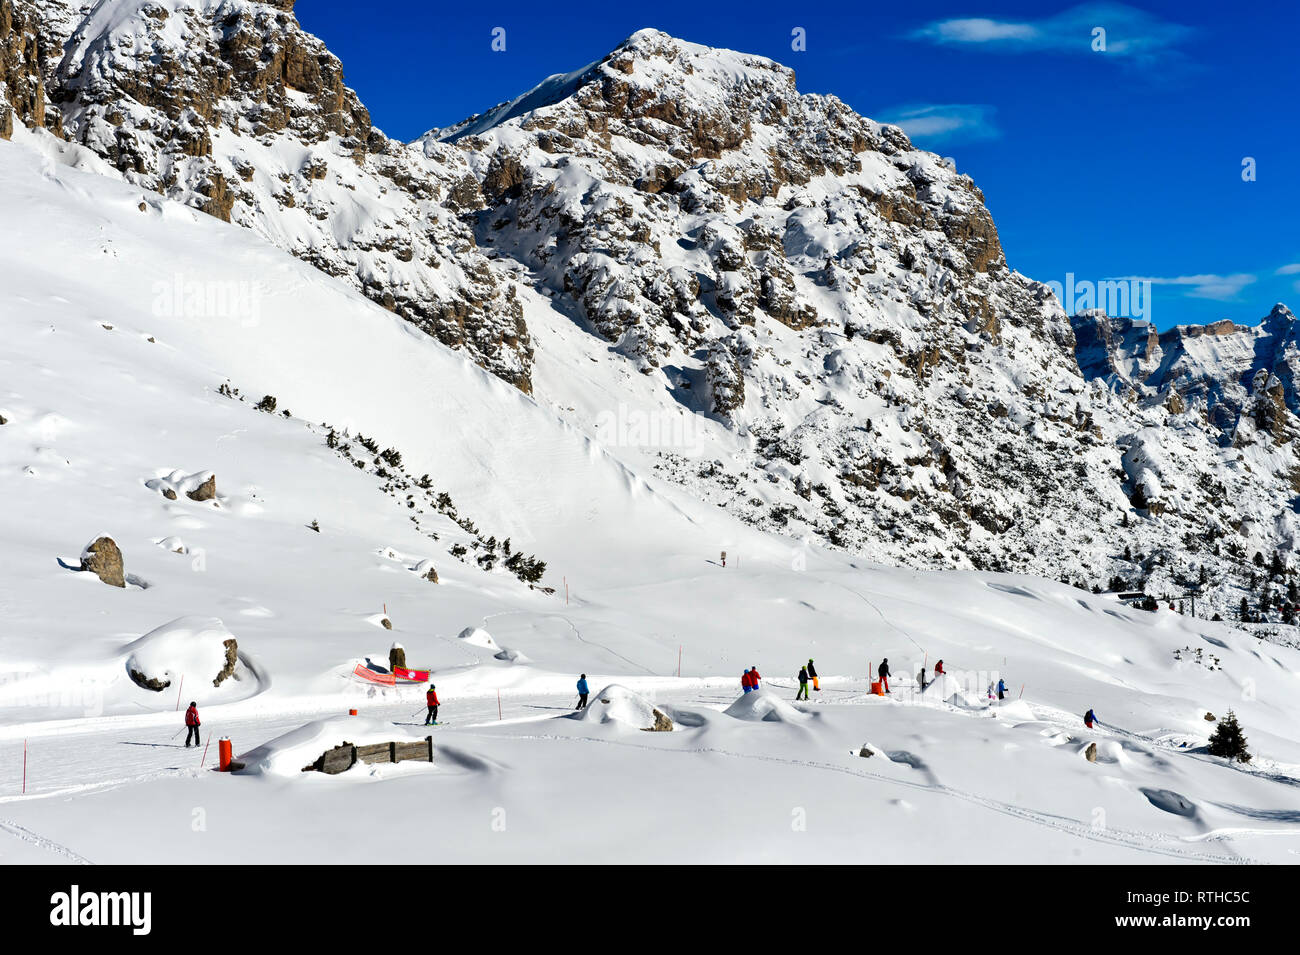 Skiers in the skiing area Colfosco, Alta Badia, Corvara, South Tyrol, Italy Stock Photo